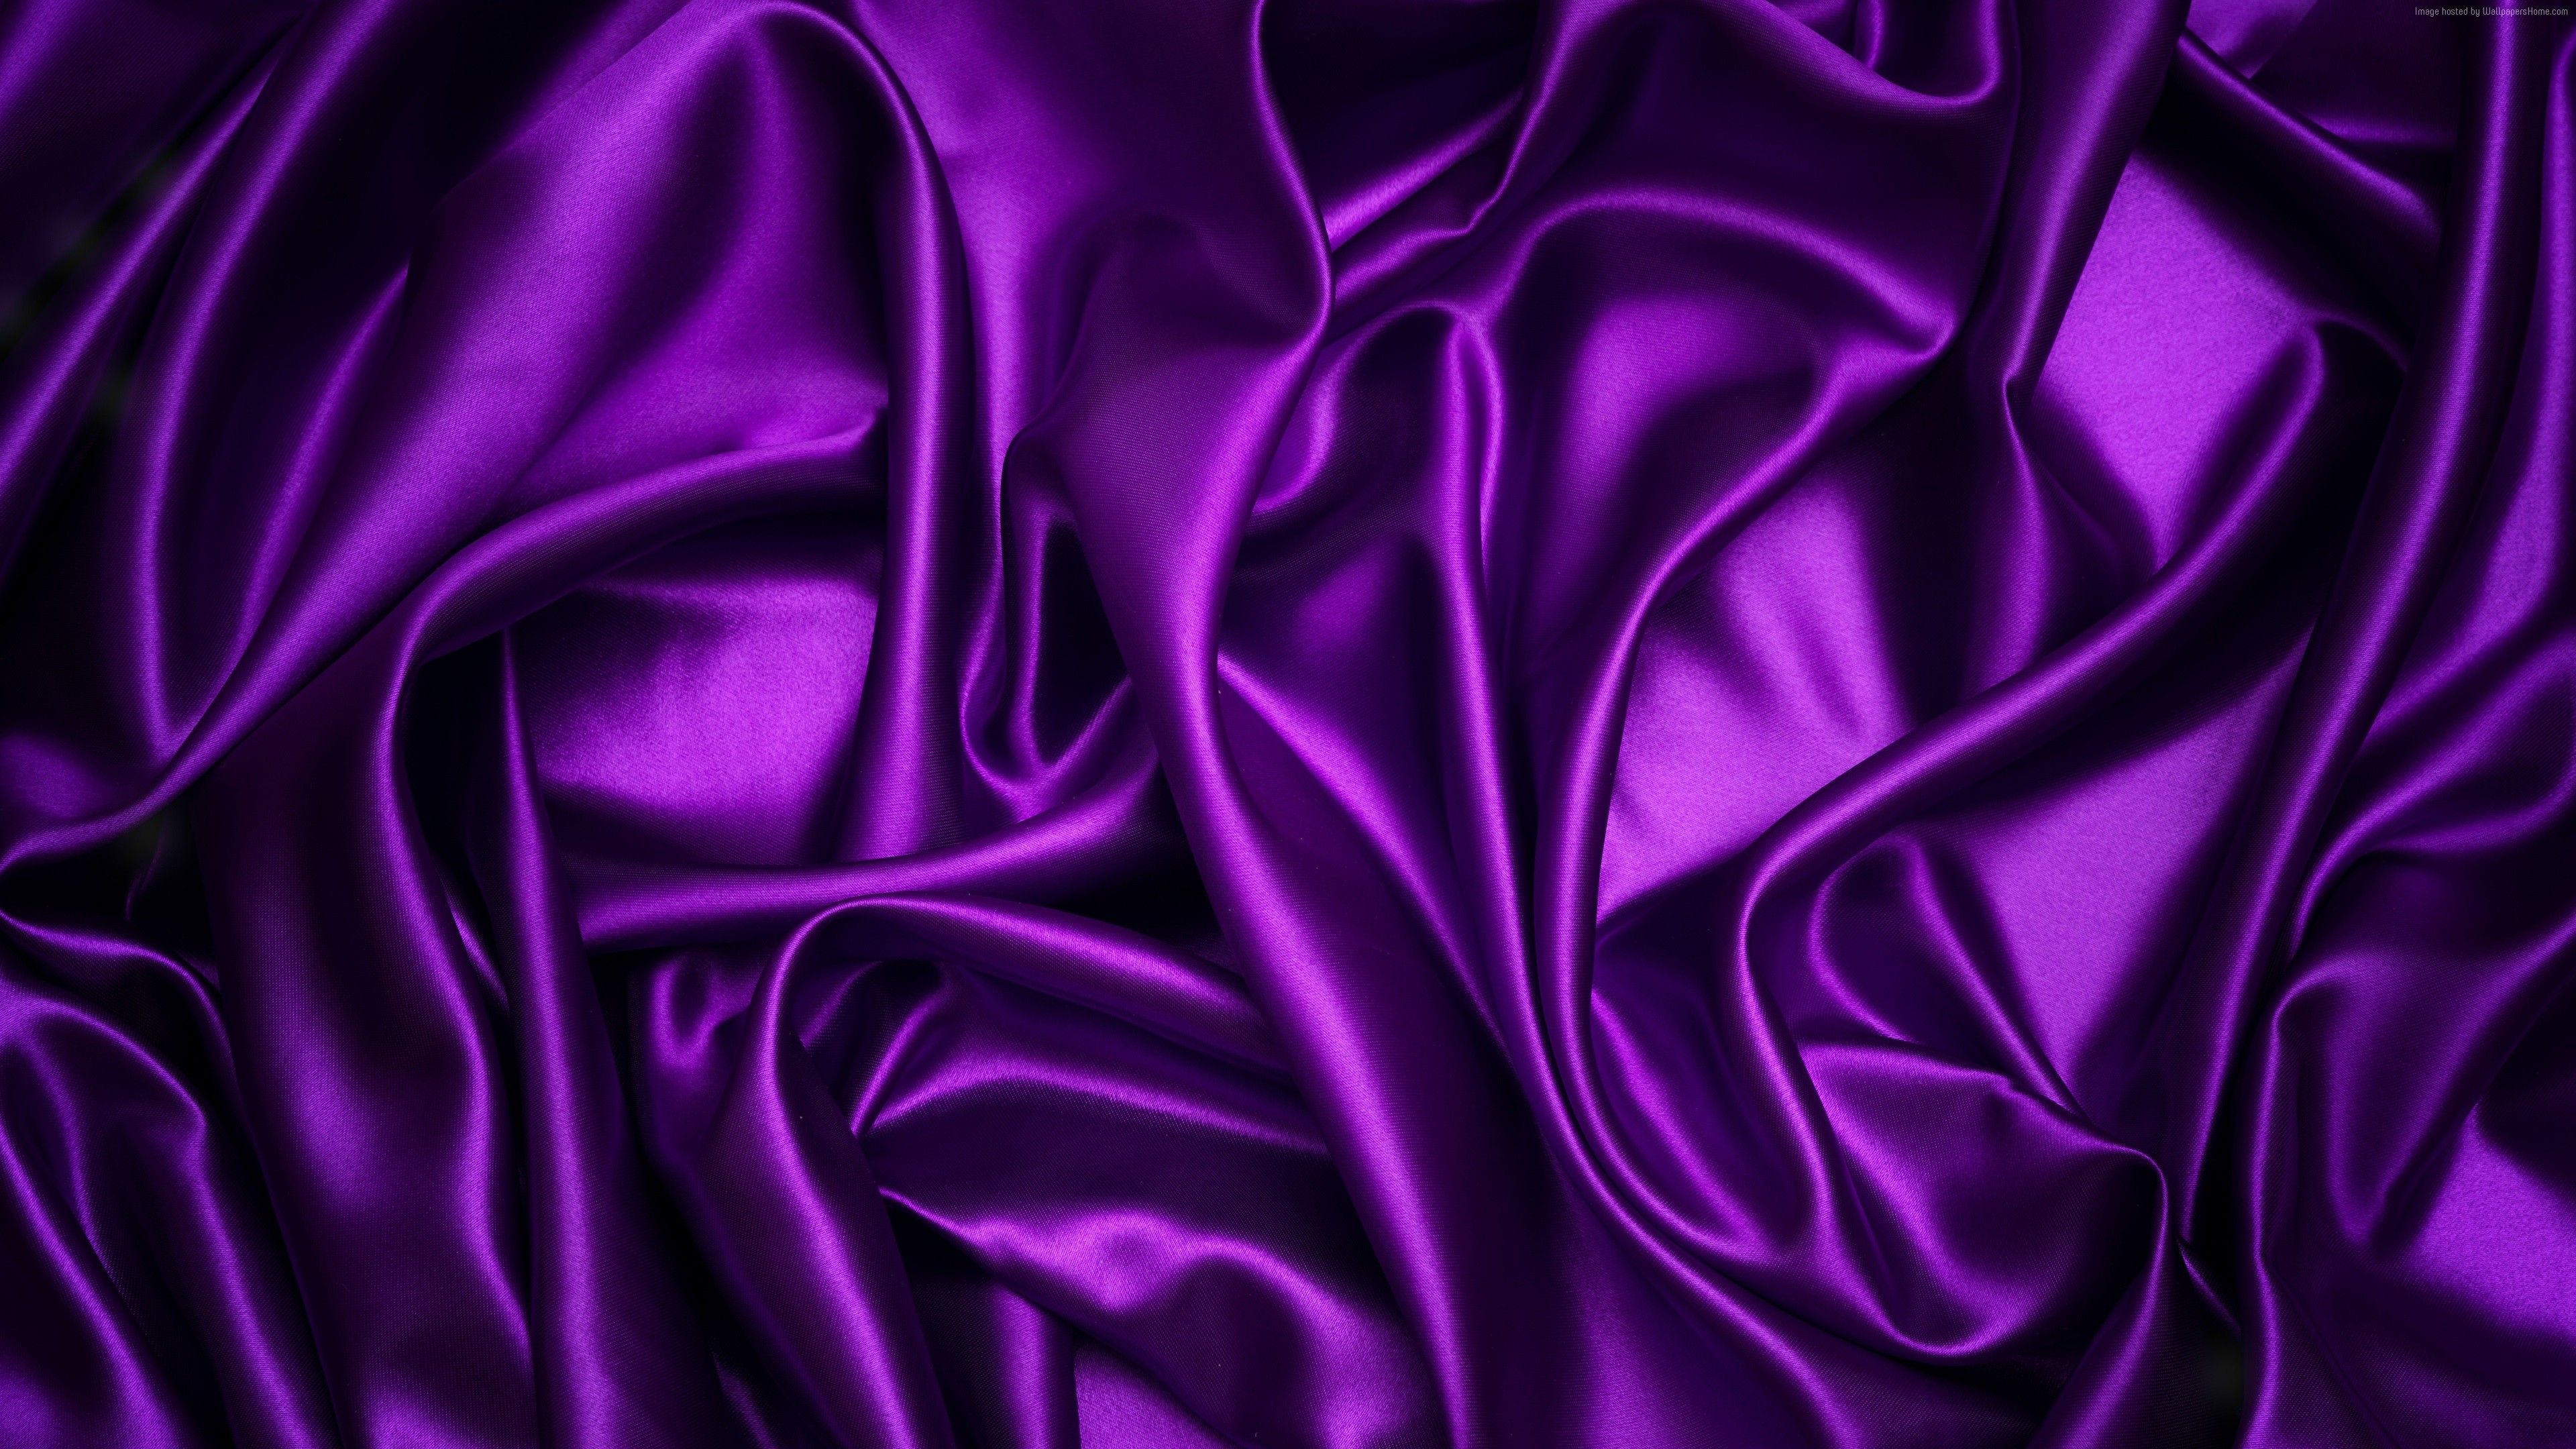 Descargar Colors wallpaper, purple, 4K, Abstract Wallpaper. Alta resolución